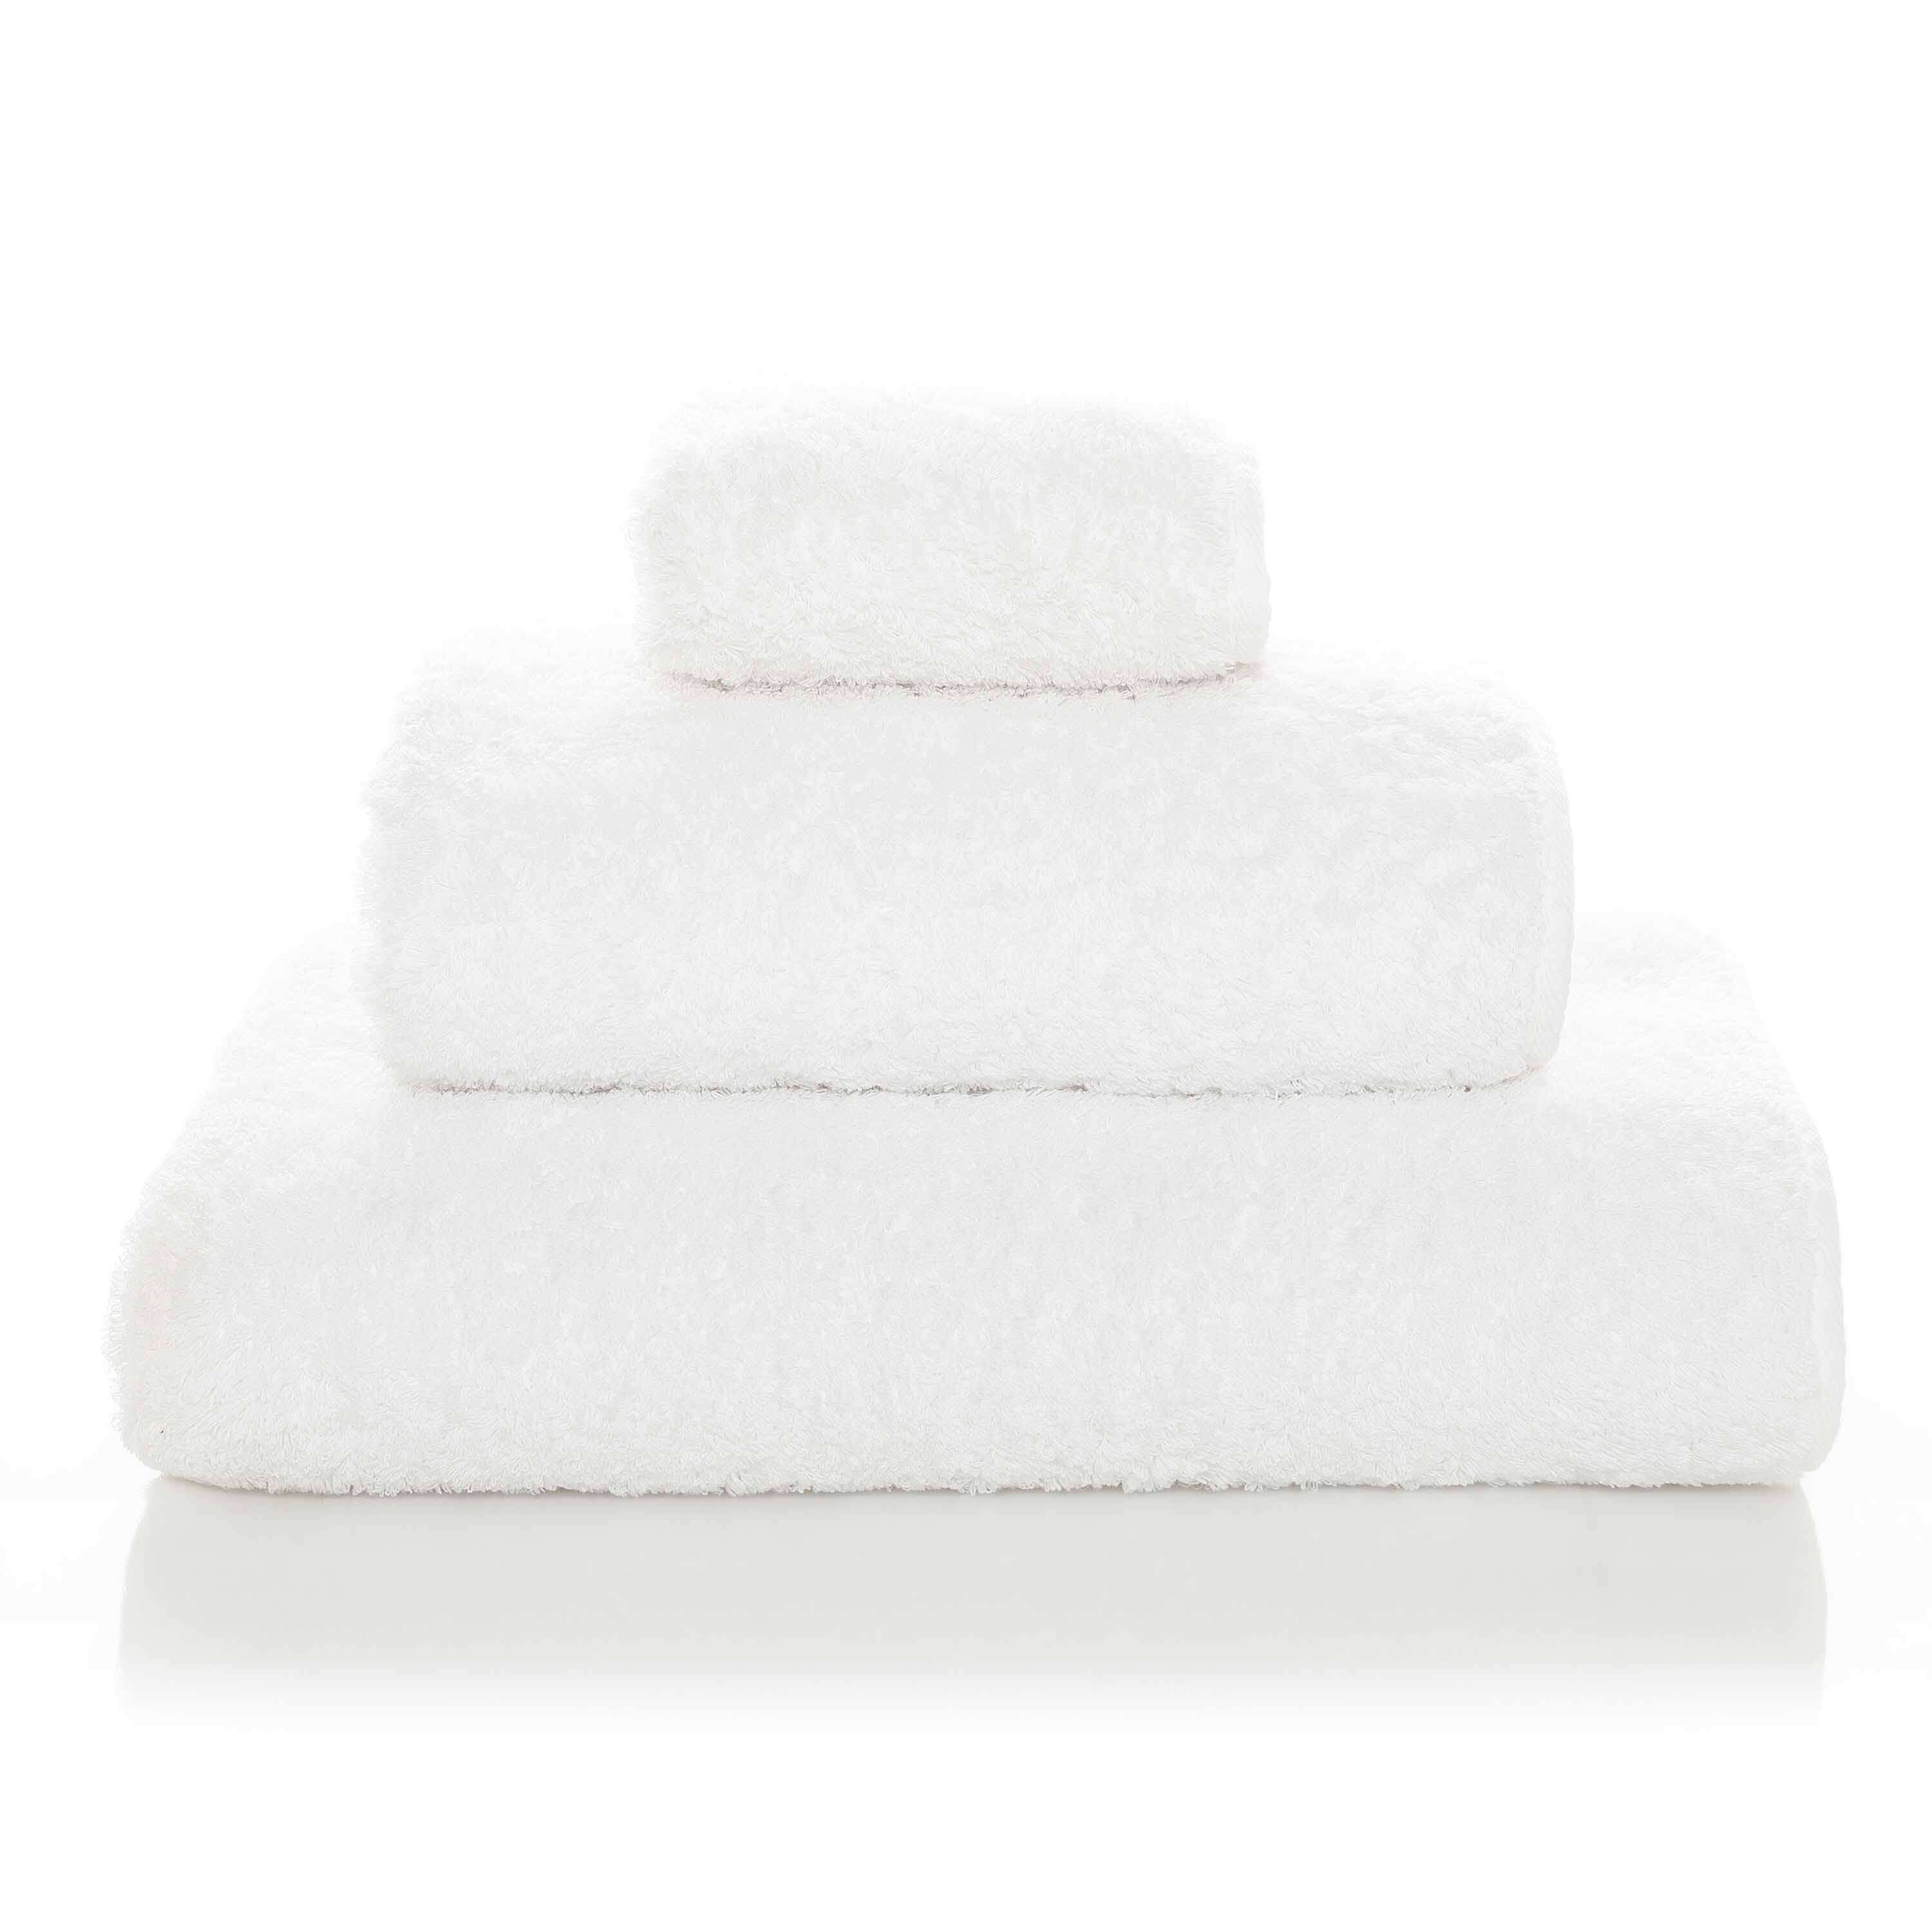 Элитное полотенце Egoist Range White ☞ Размер: 50 x 100 см